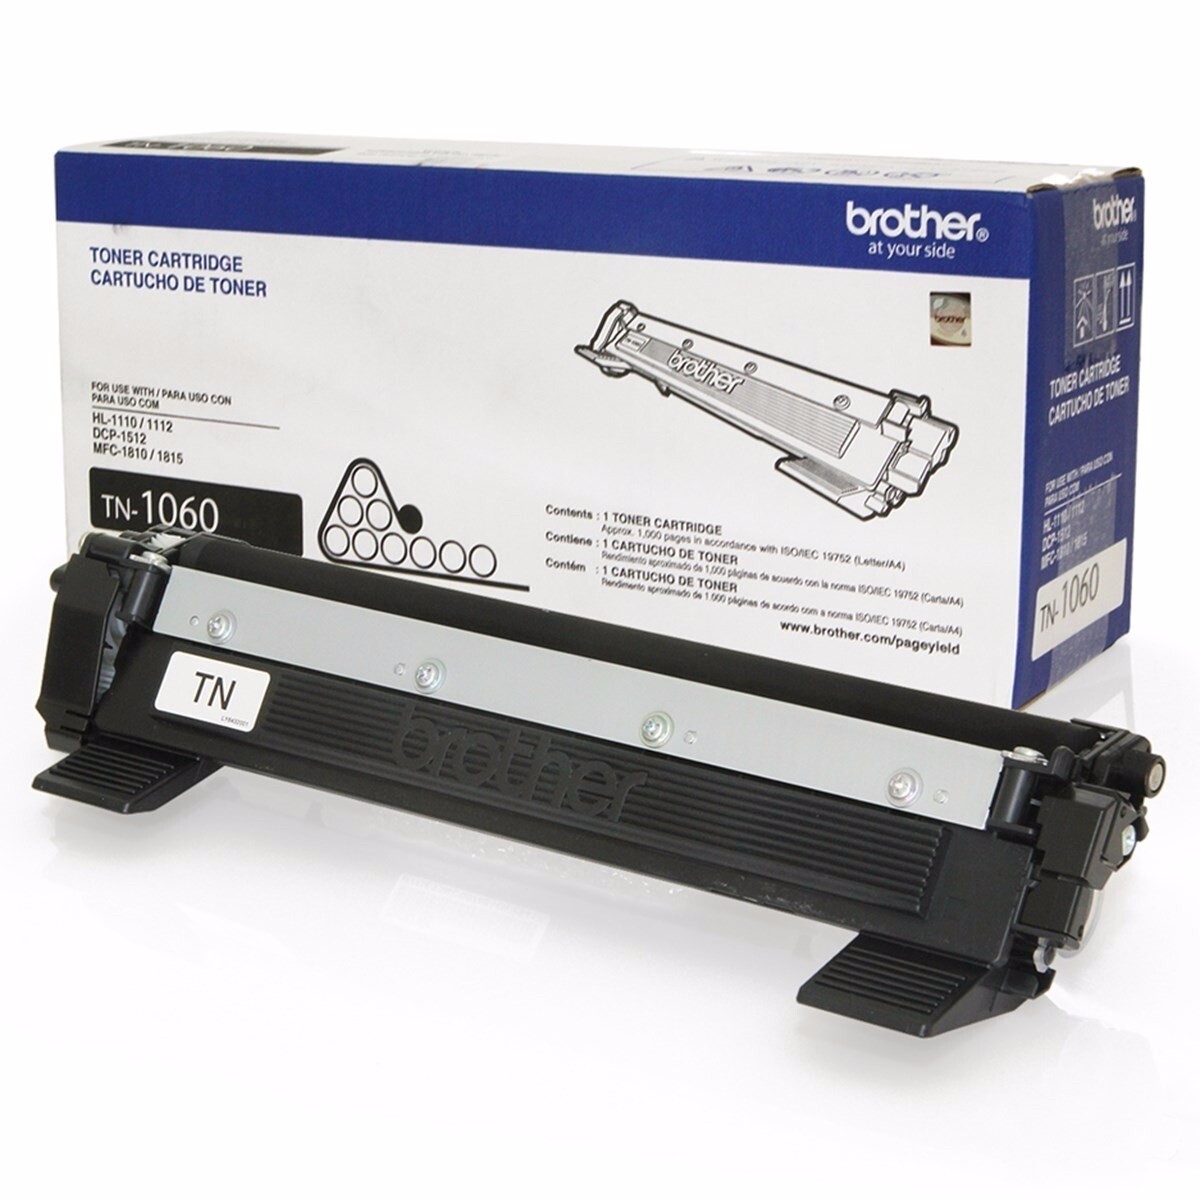 Cartucho Toner de Repuesto TN1060 para Impresora Brother HL1212N | HL1202 - Negro 